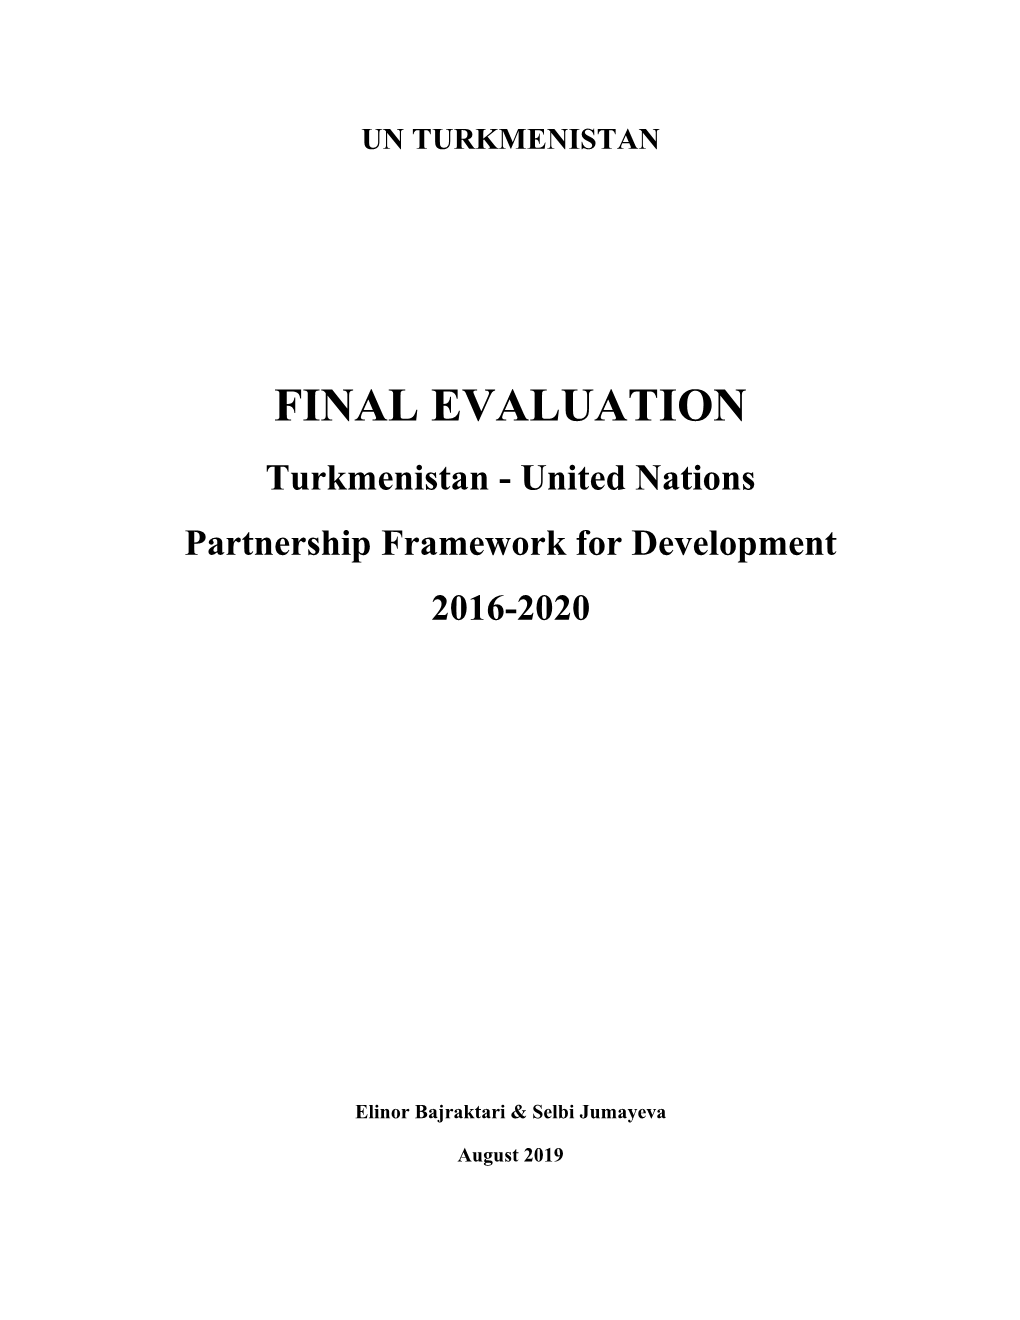 FINAL EVALUATION Turkmenistan - United Nations Partnership Framework for Development 2016-2020